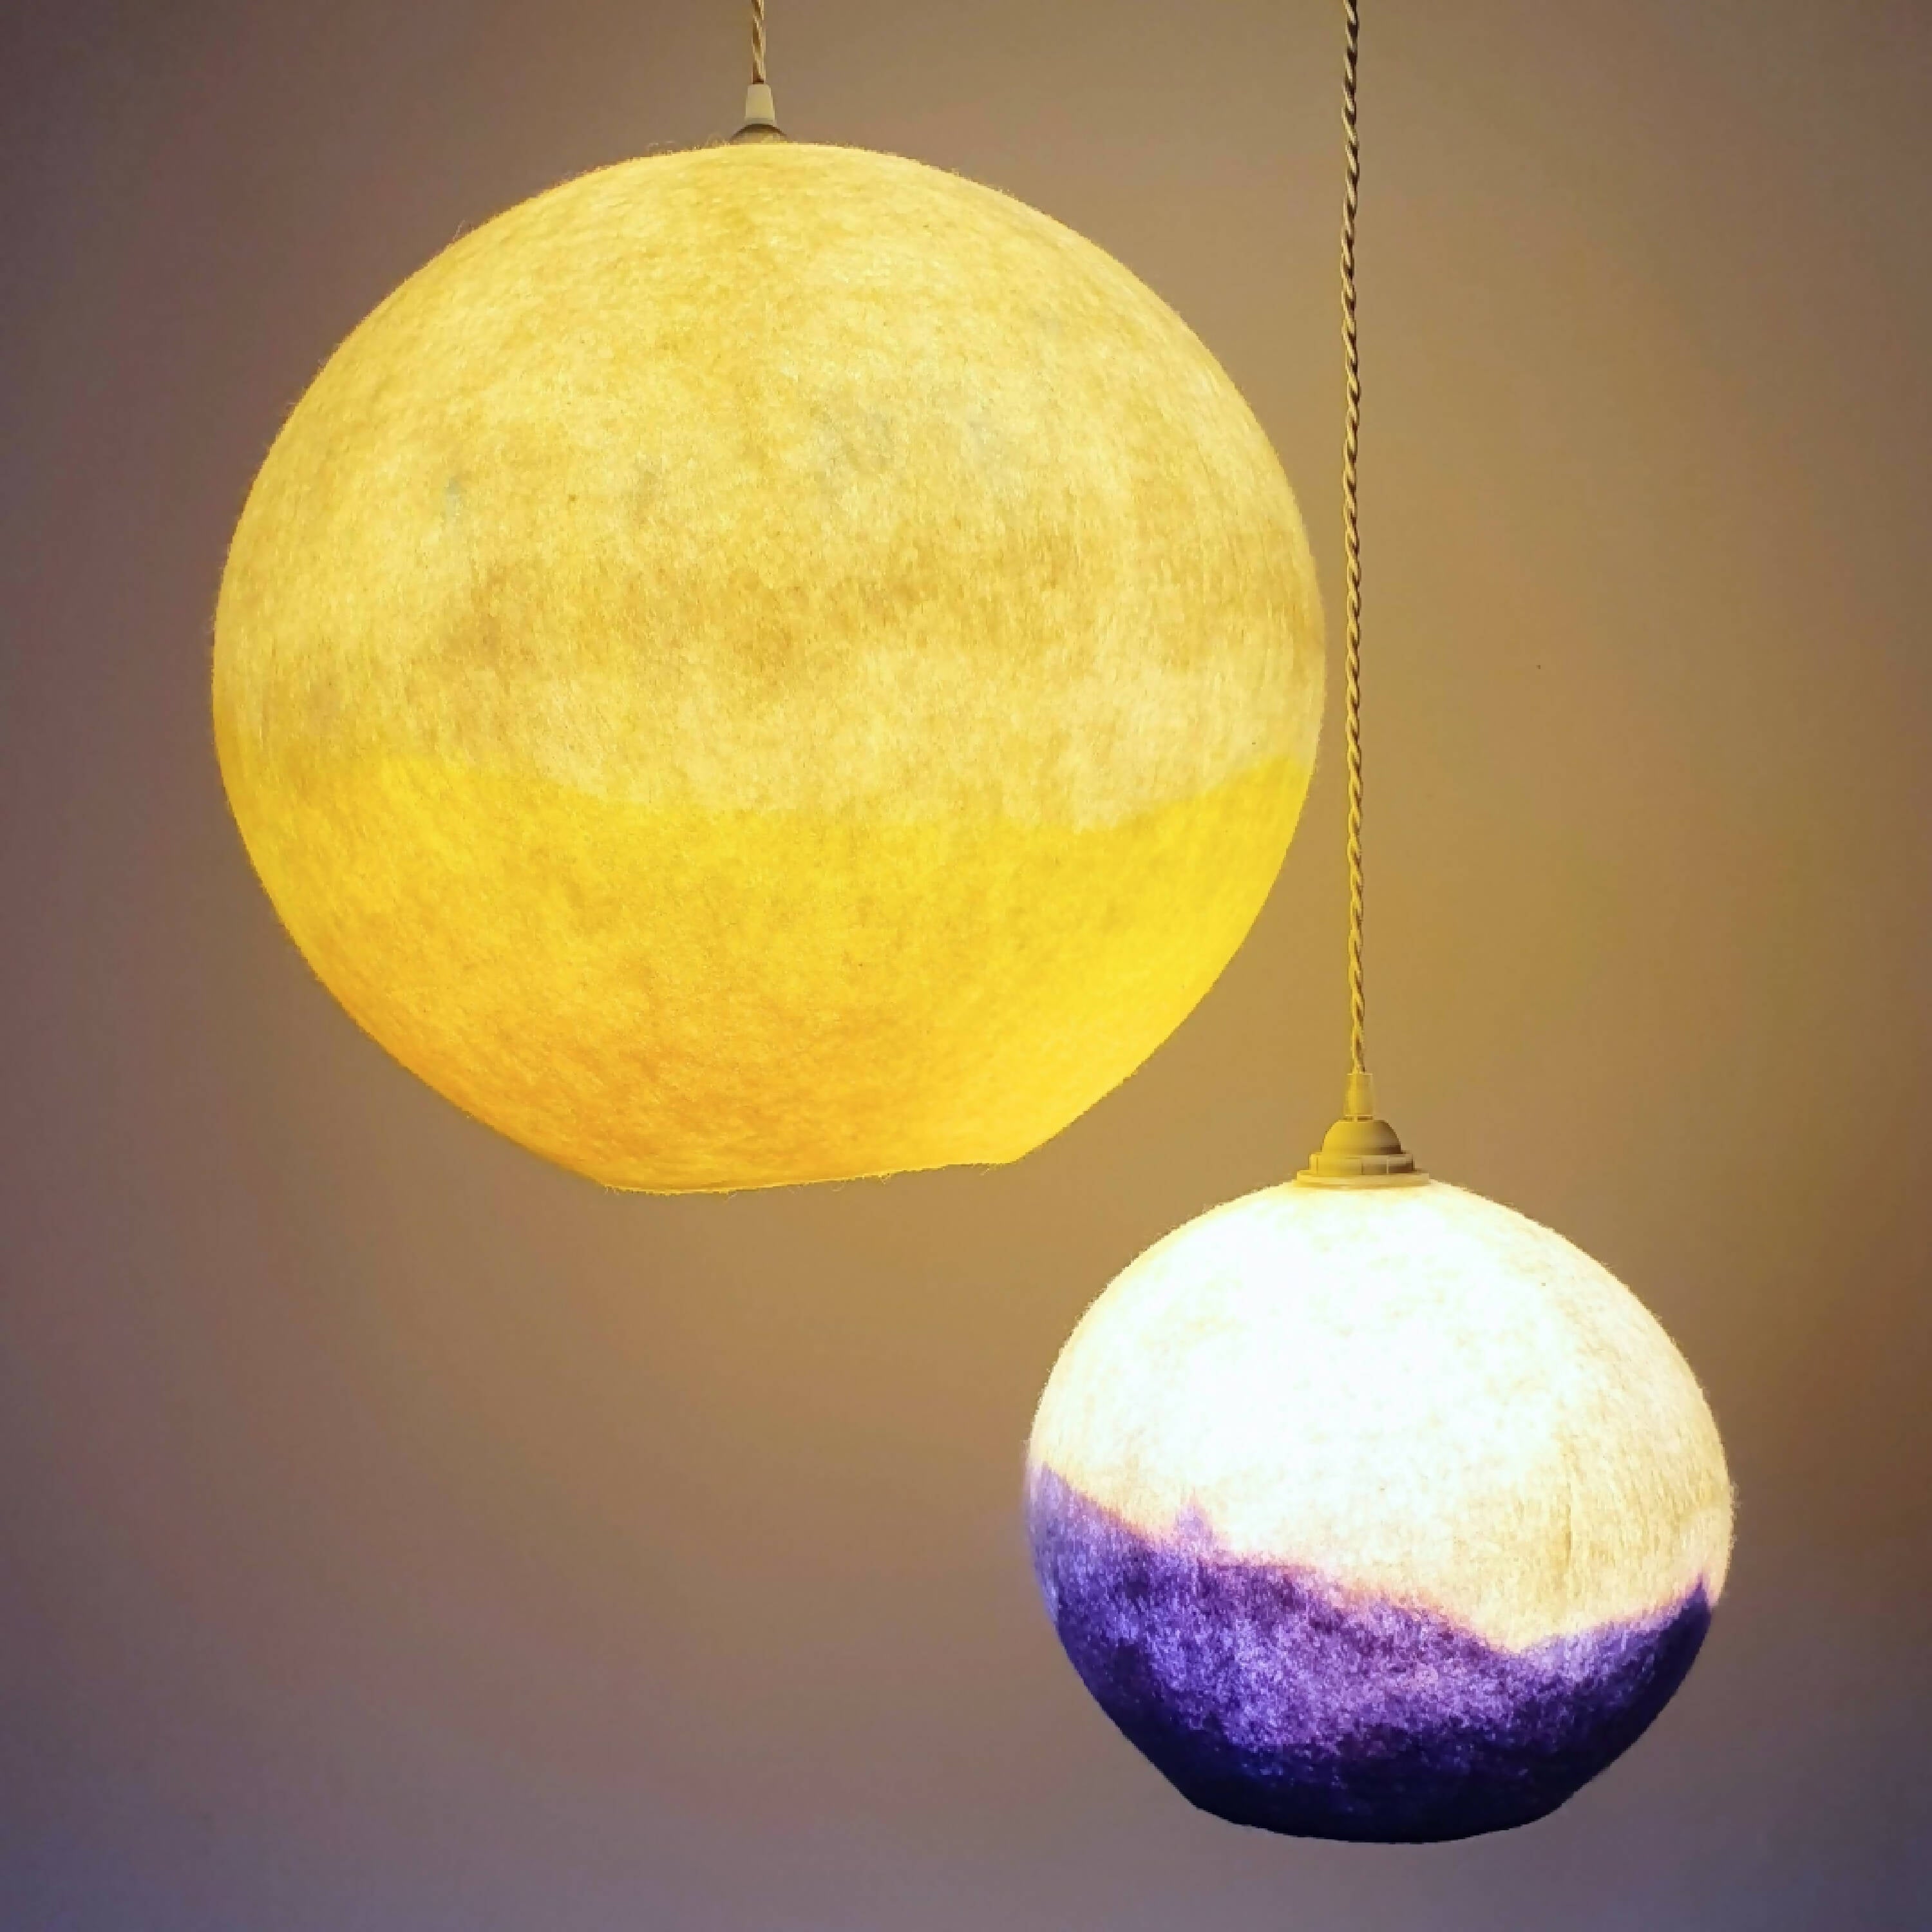 Suspension Pleine Lune jaune soleil n°4 | EMPREINTES Paris | EMPREINTES Paris